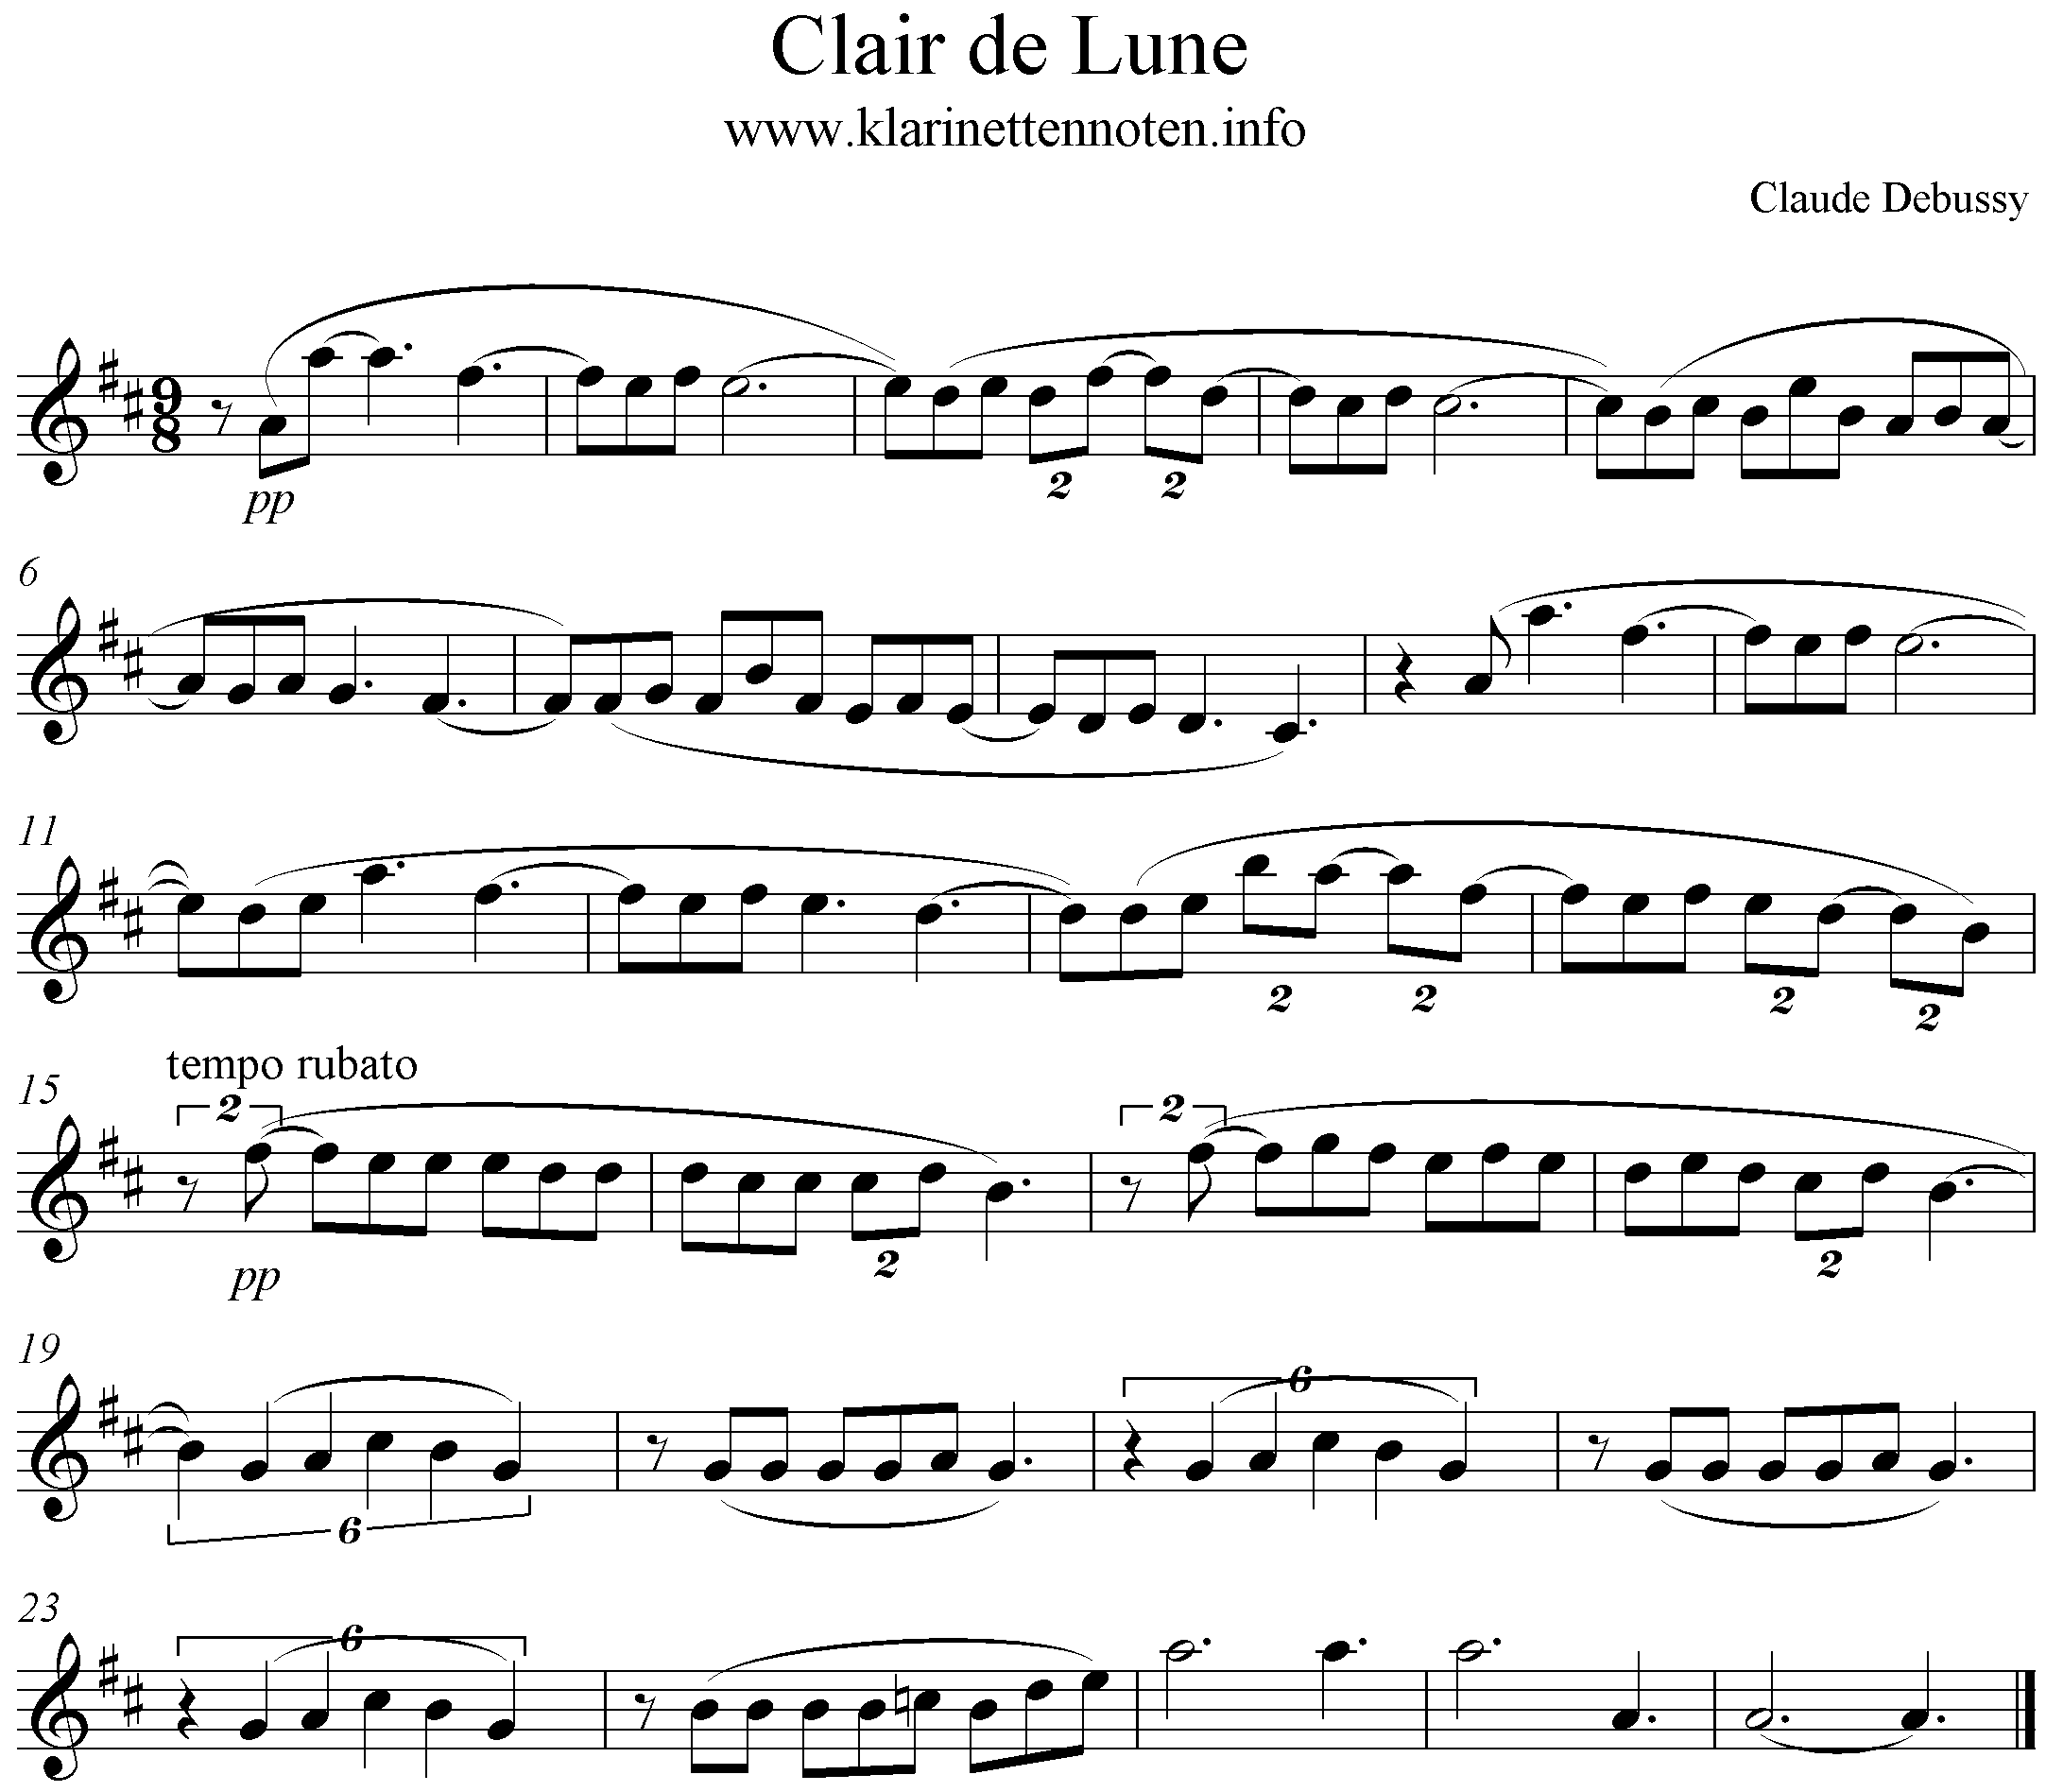 Clair de lune, Debussy, D-Major, Clarinet, Solo, Klarinette